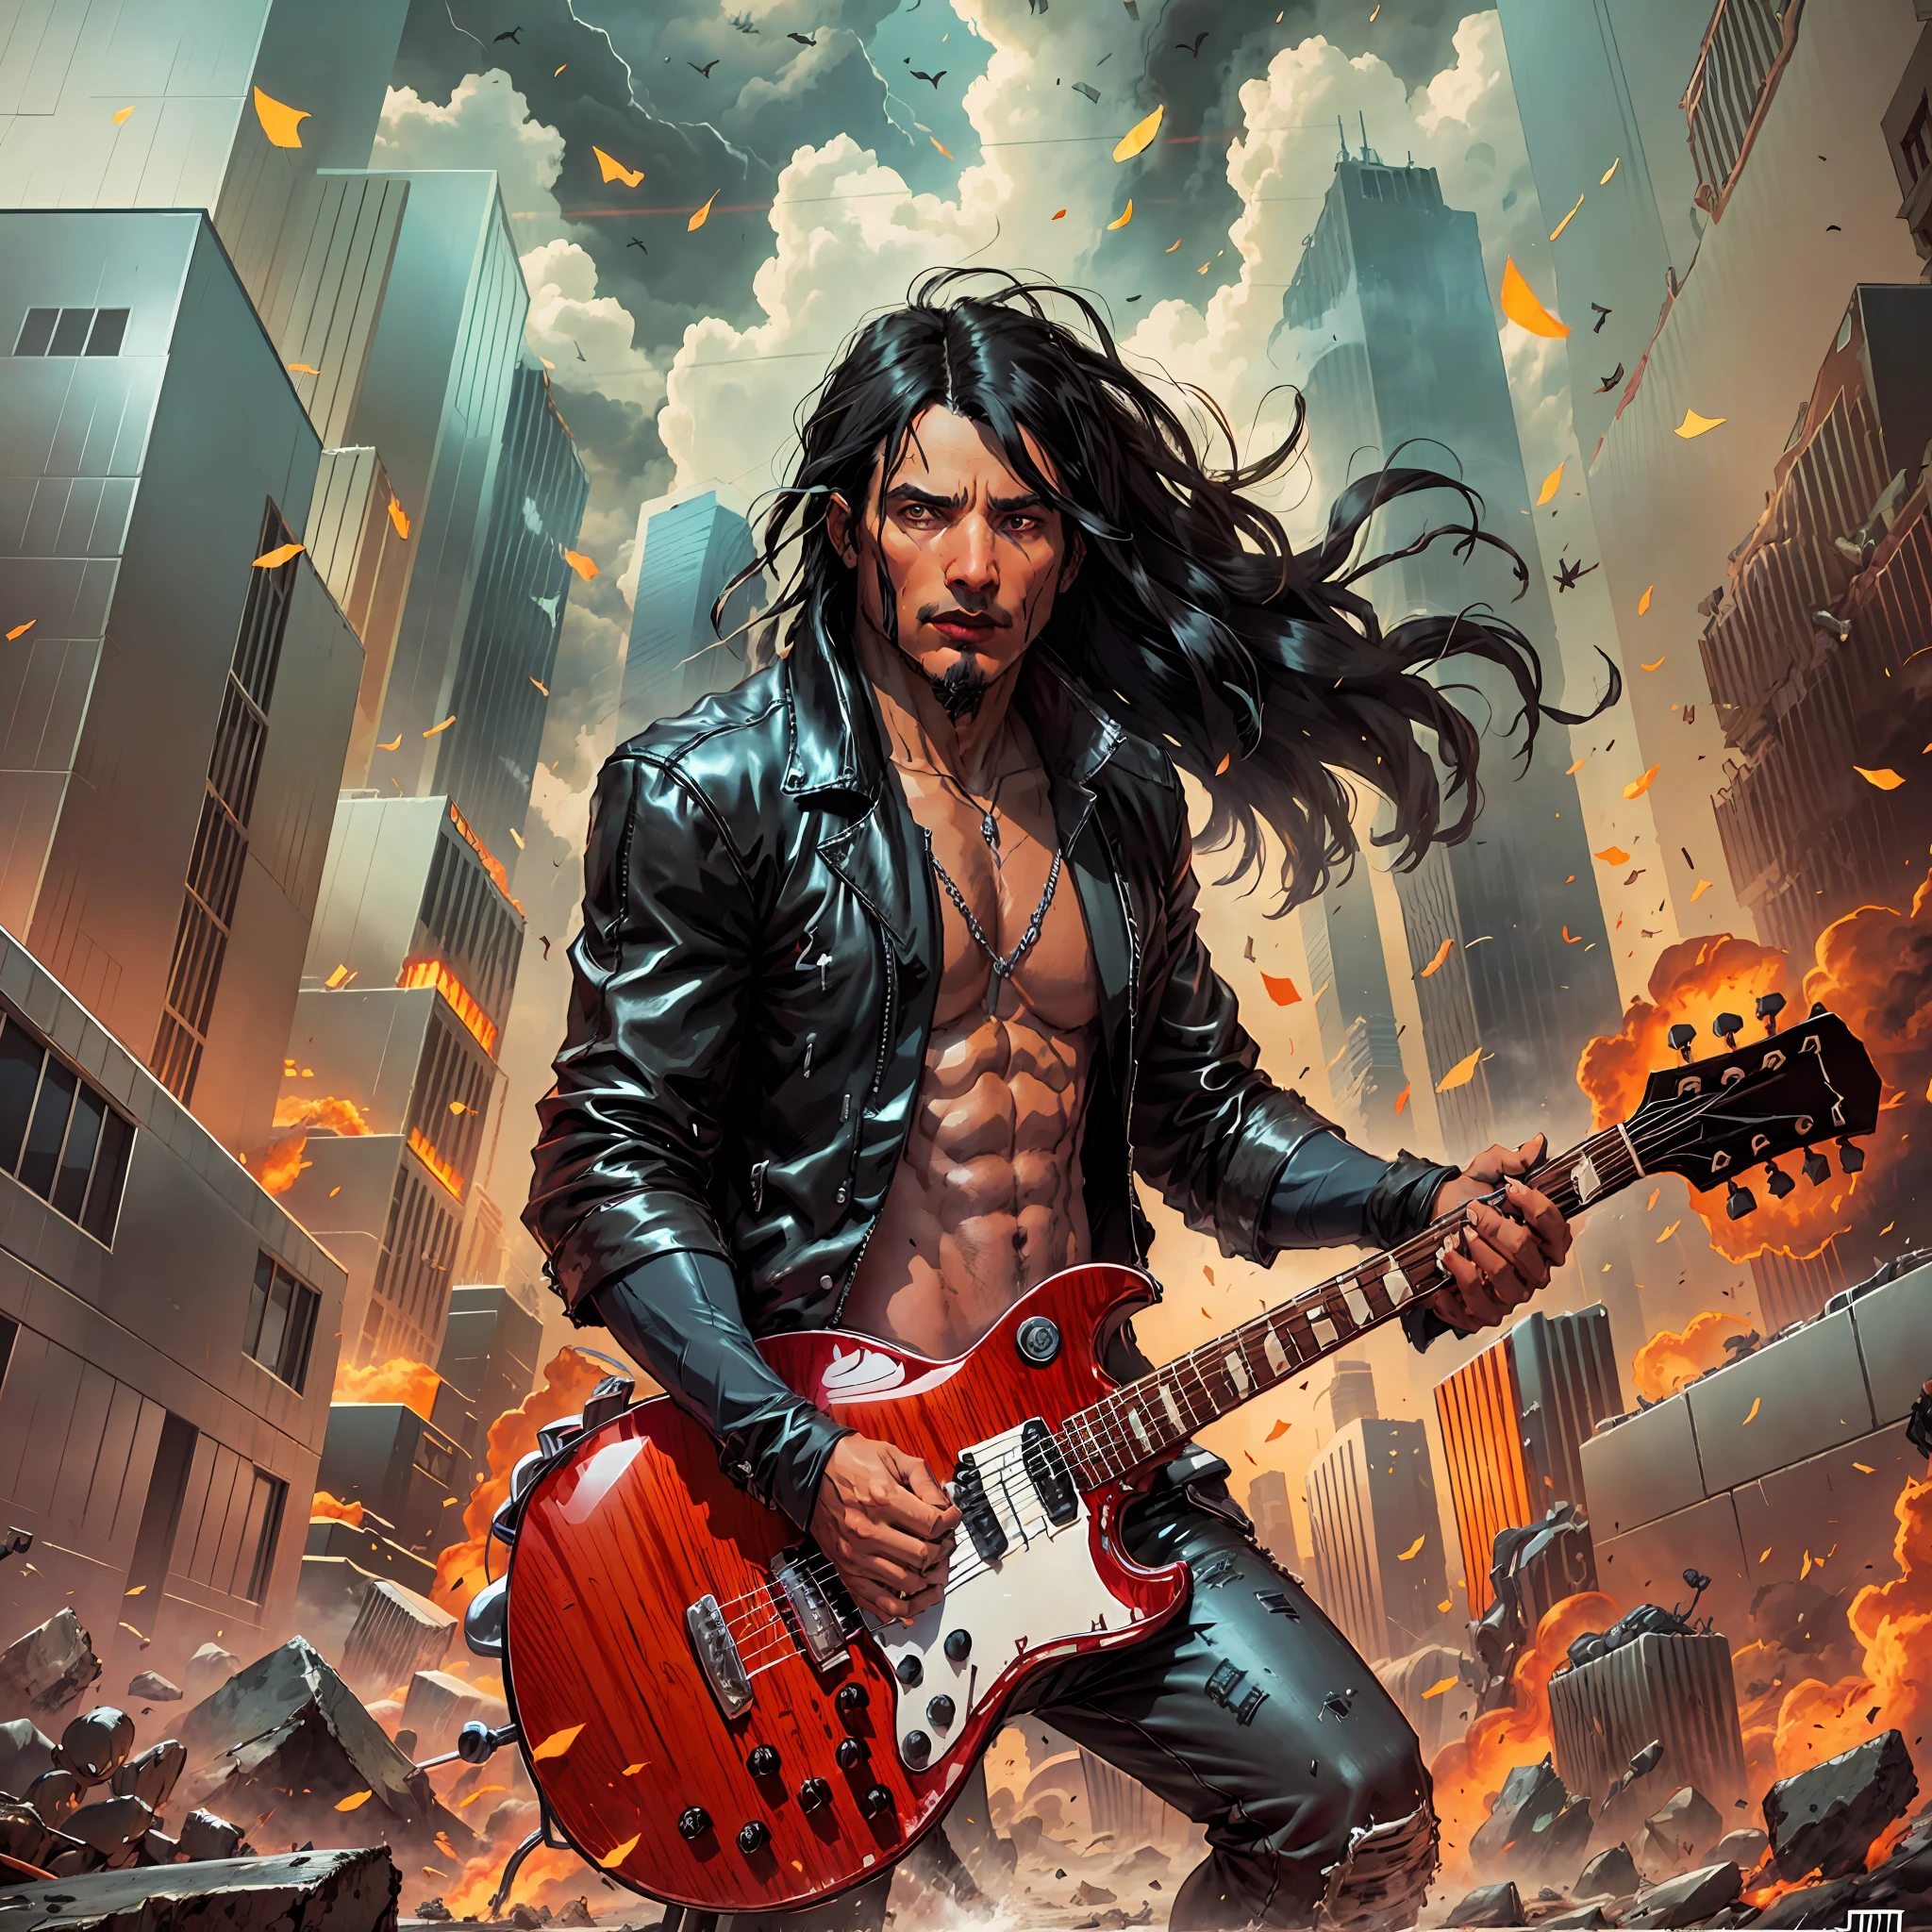 um homem (1 homem) Com longos cabelos pretos, jaqueta preta estilo rock in roll tocando guitarra, uma cidade completamente destruída e em chamas, estilo de arte digital de fantasia épica, Ilustração de fantasia épica